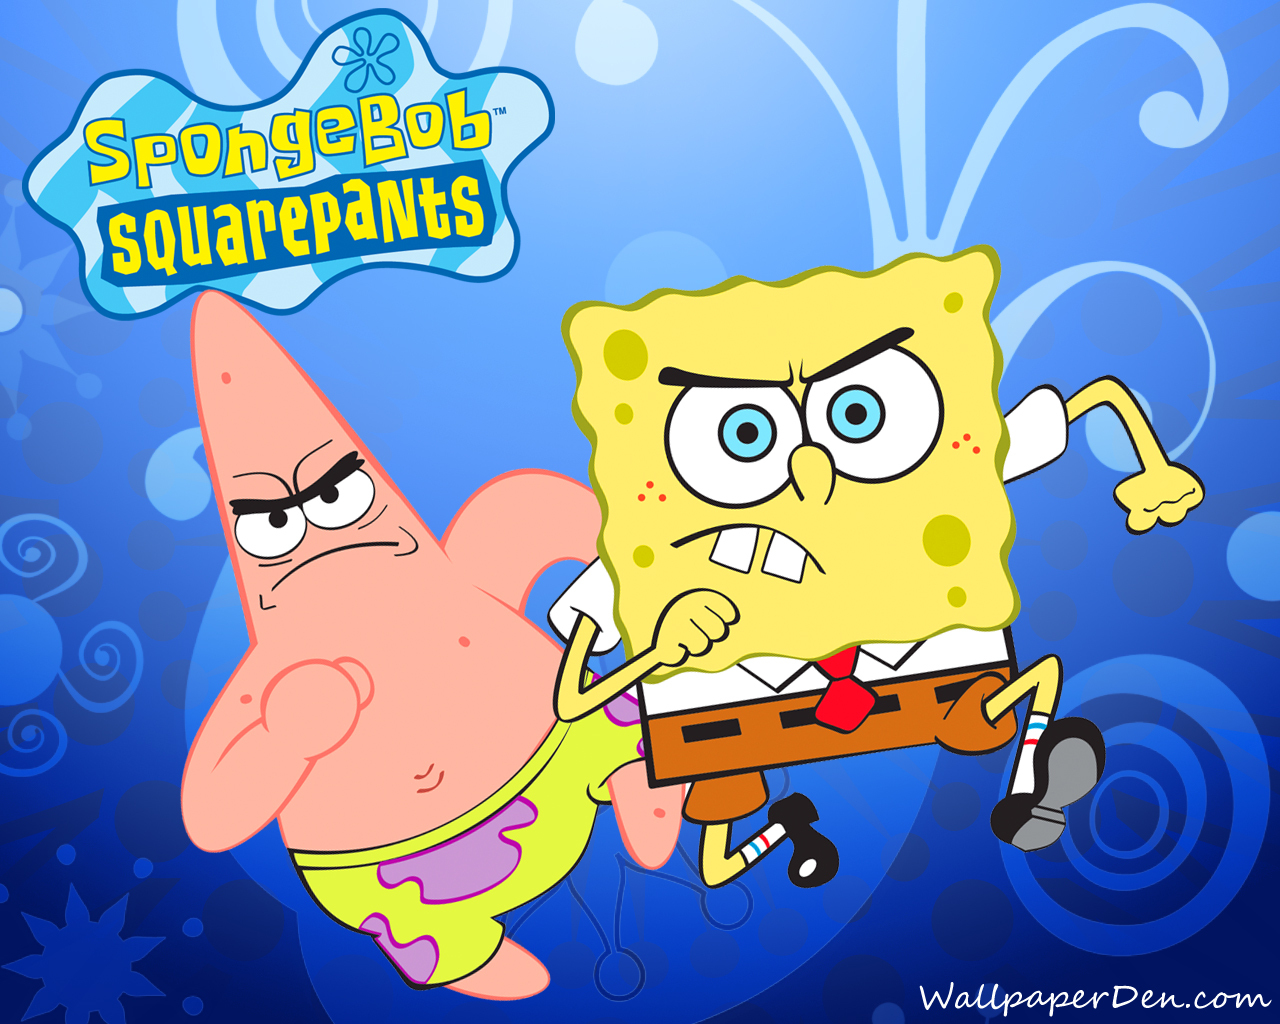 SpongeBob SquarePants: The Cosmic Shake Wallpapers